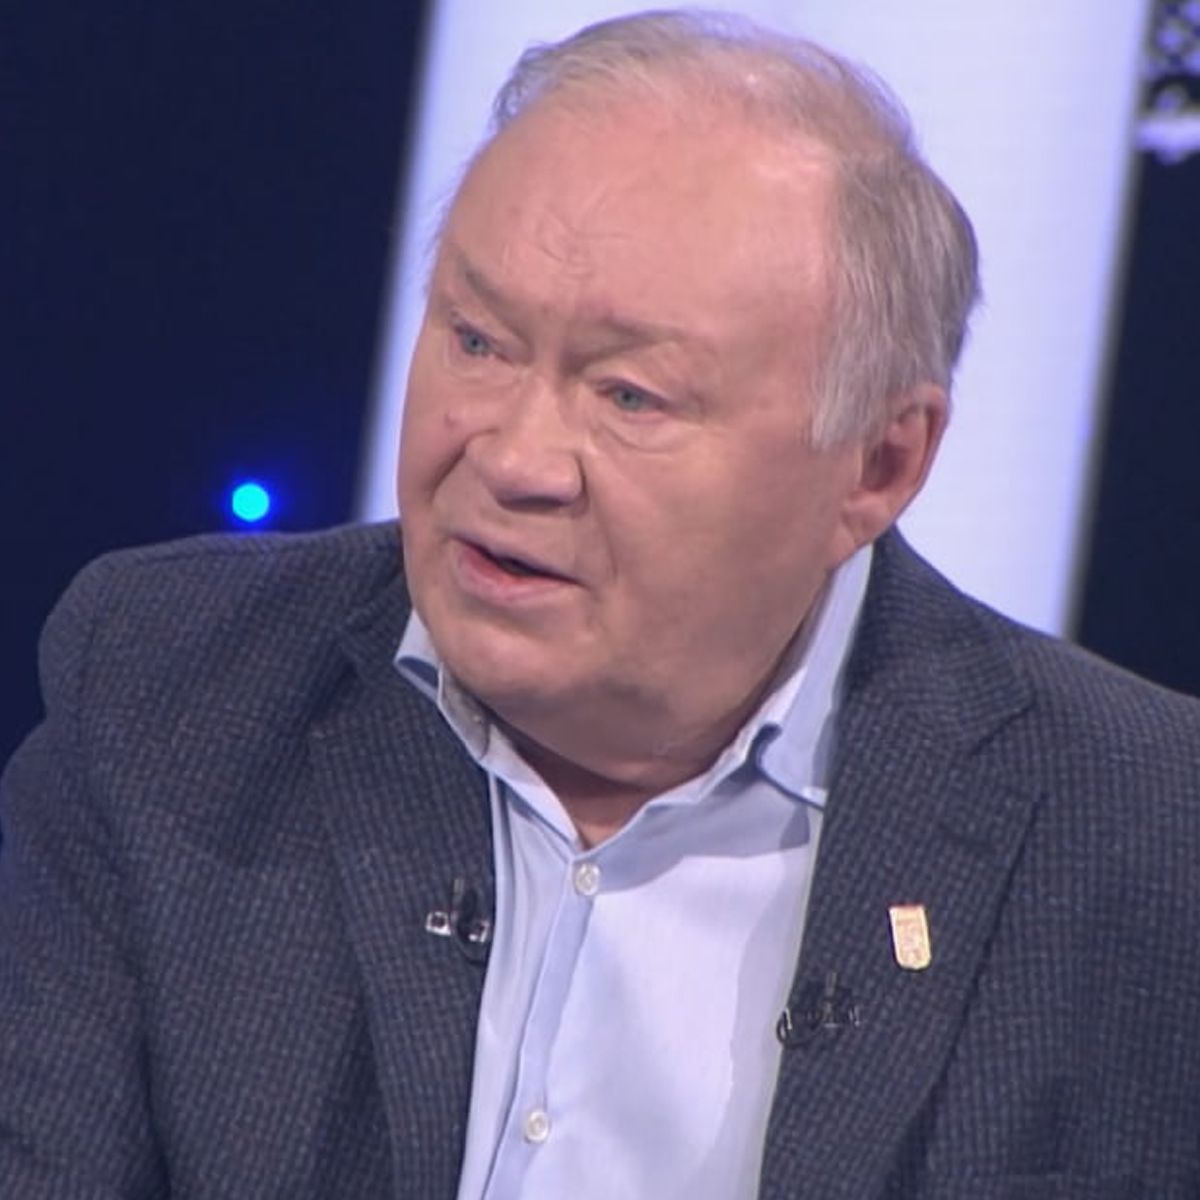 Юрий Кузнецов не смог сдержать слез после воспоминаний об умершей жене -  Вокруг ТВ.